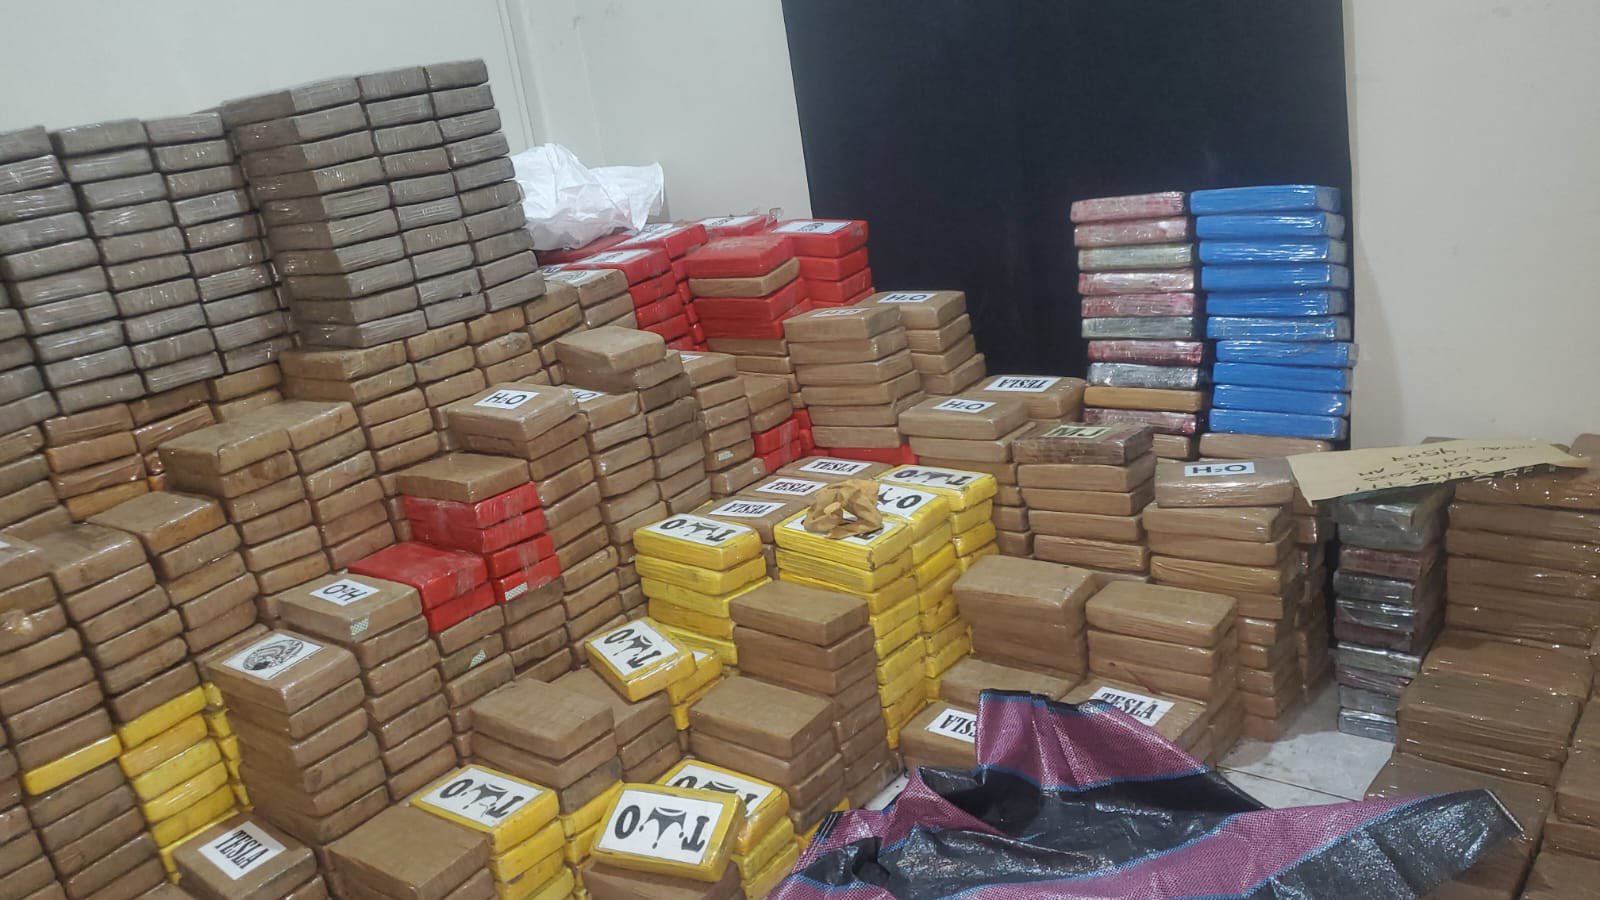 A cinco toneladas de droga llegó el peso de una incautación realizada este viernes 21 de abril en el sector de Urdesa, en el norte de Guayaquil.